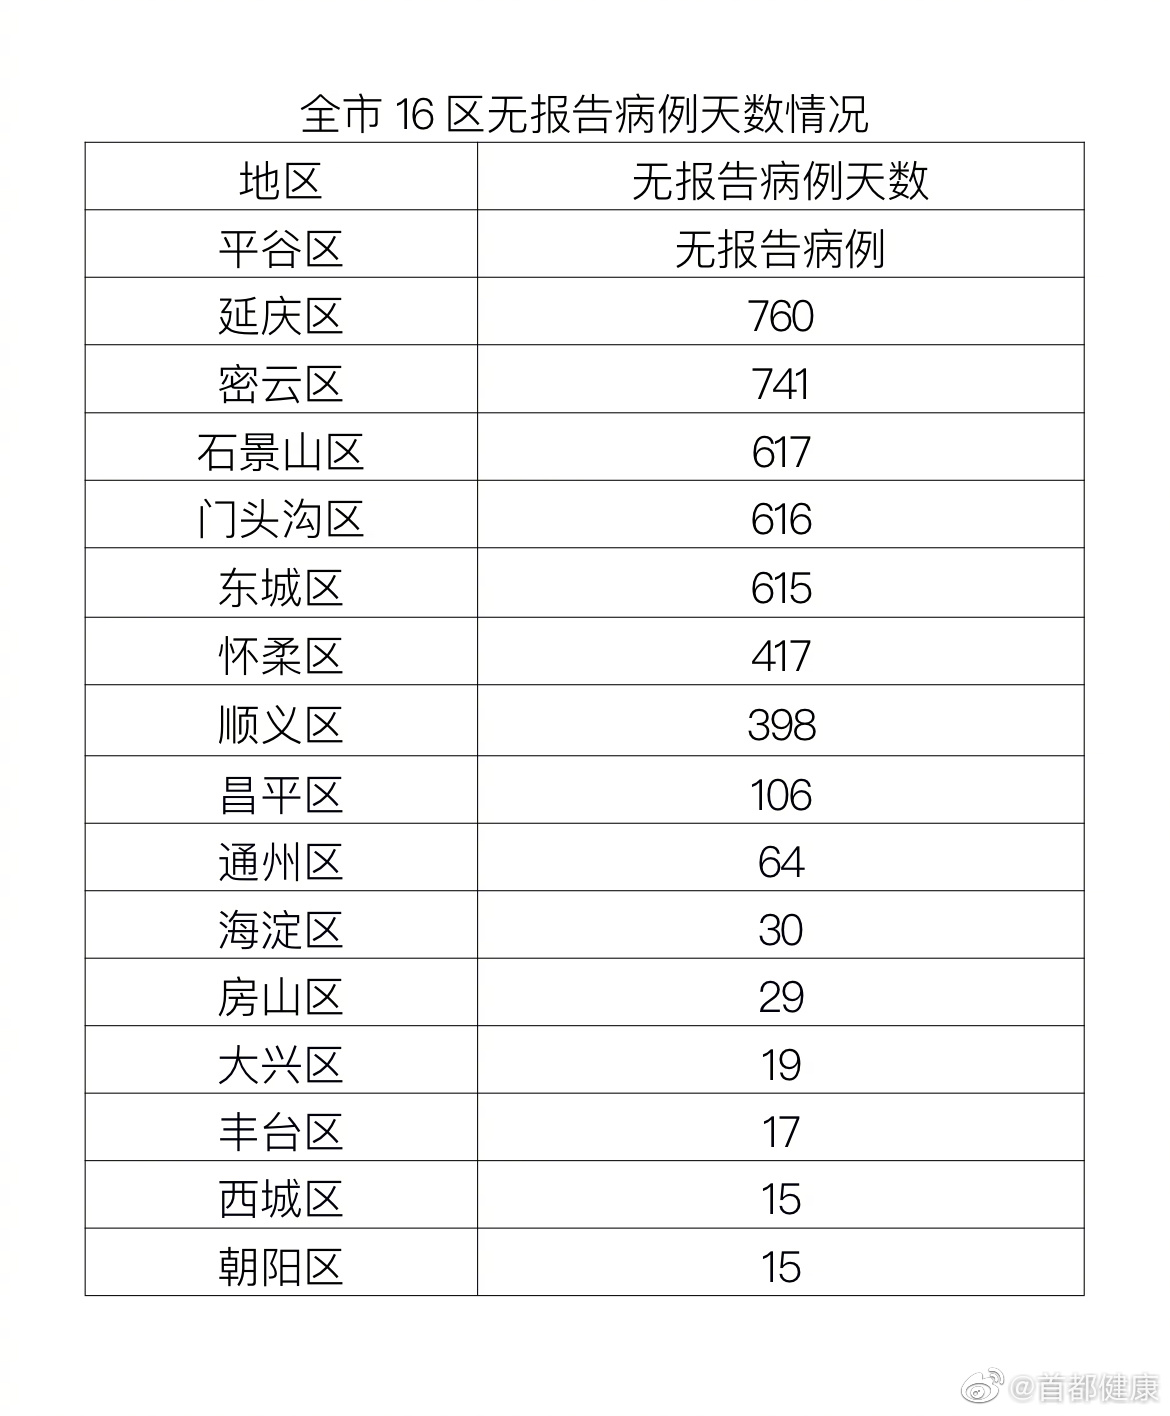 2月21日北京新增4例本土确诊病例均为涉奥关联闭环人员